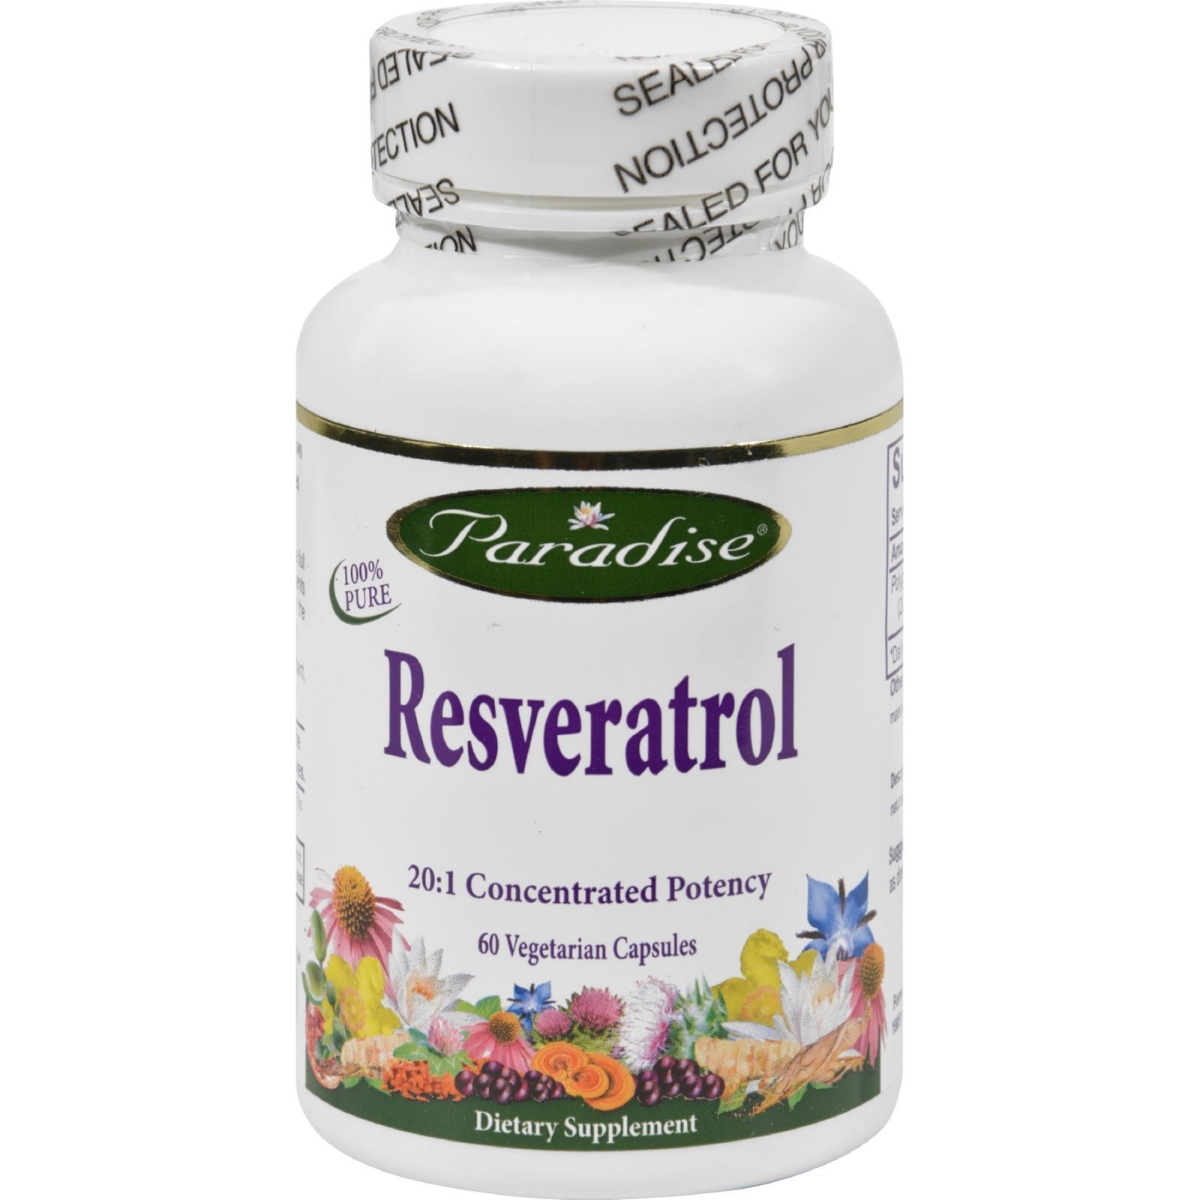 Hg0165381 Resveratrol Capsules - 60 Vegetarian Capsules